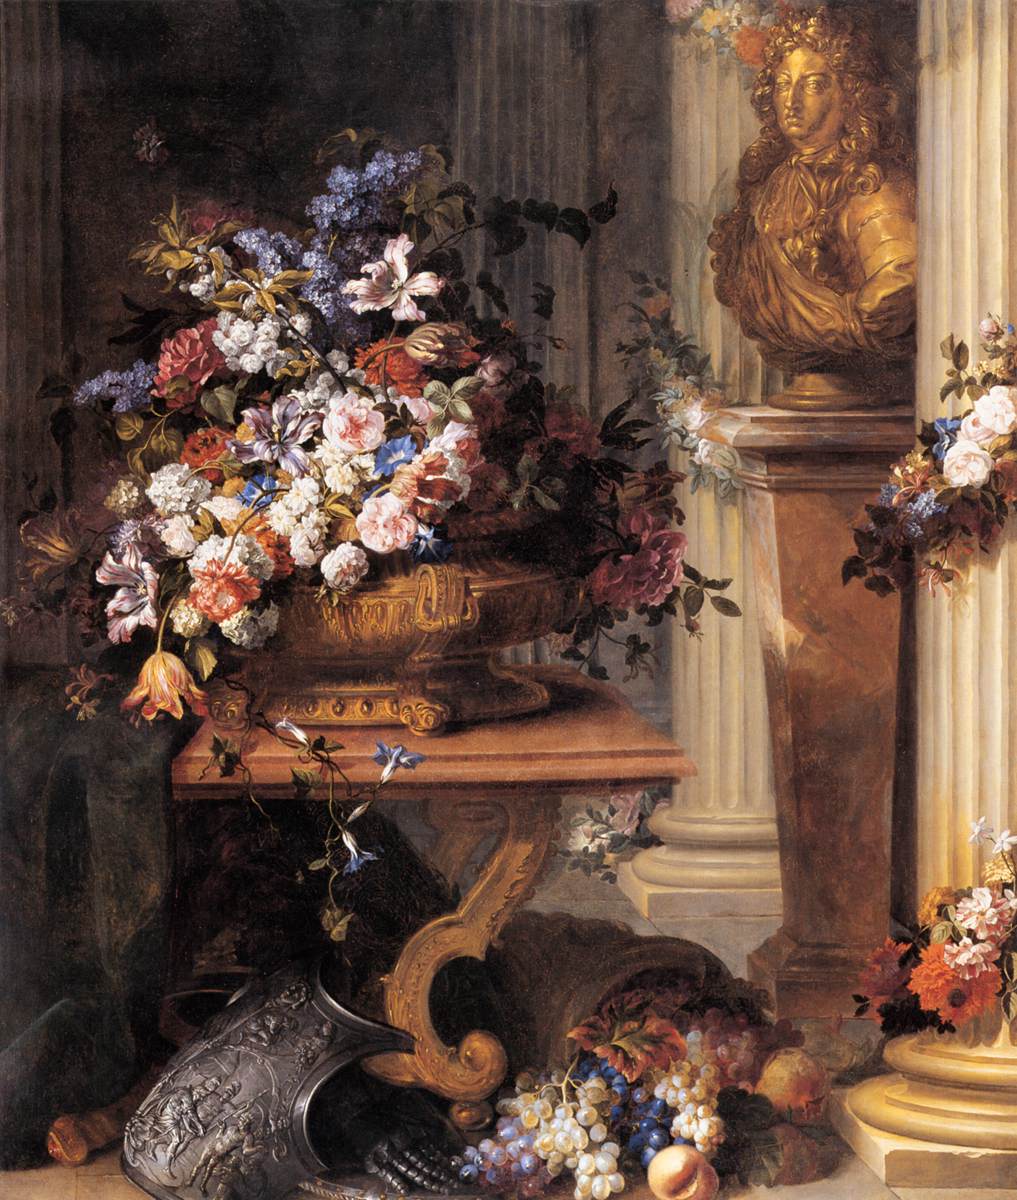 Fleurs dans un vase doré, buste de Louis XIV, corne d'abondance et armure